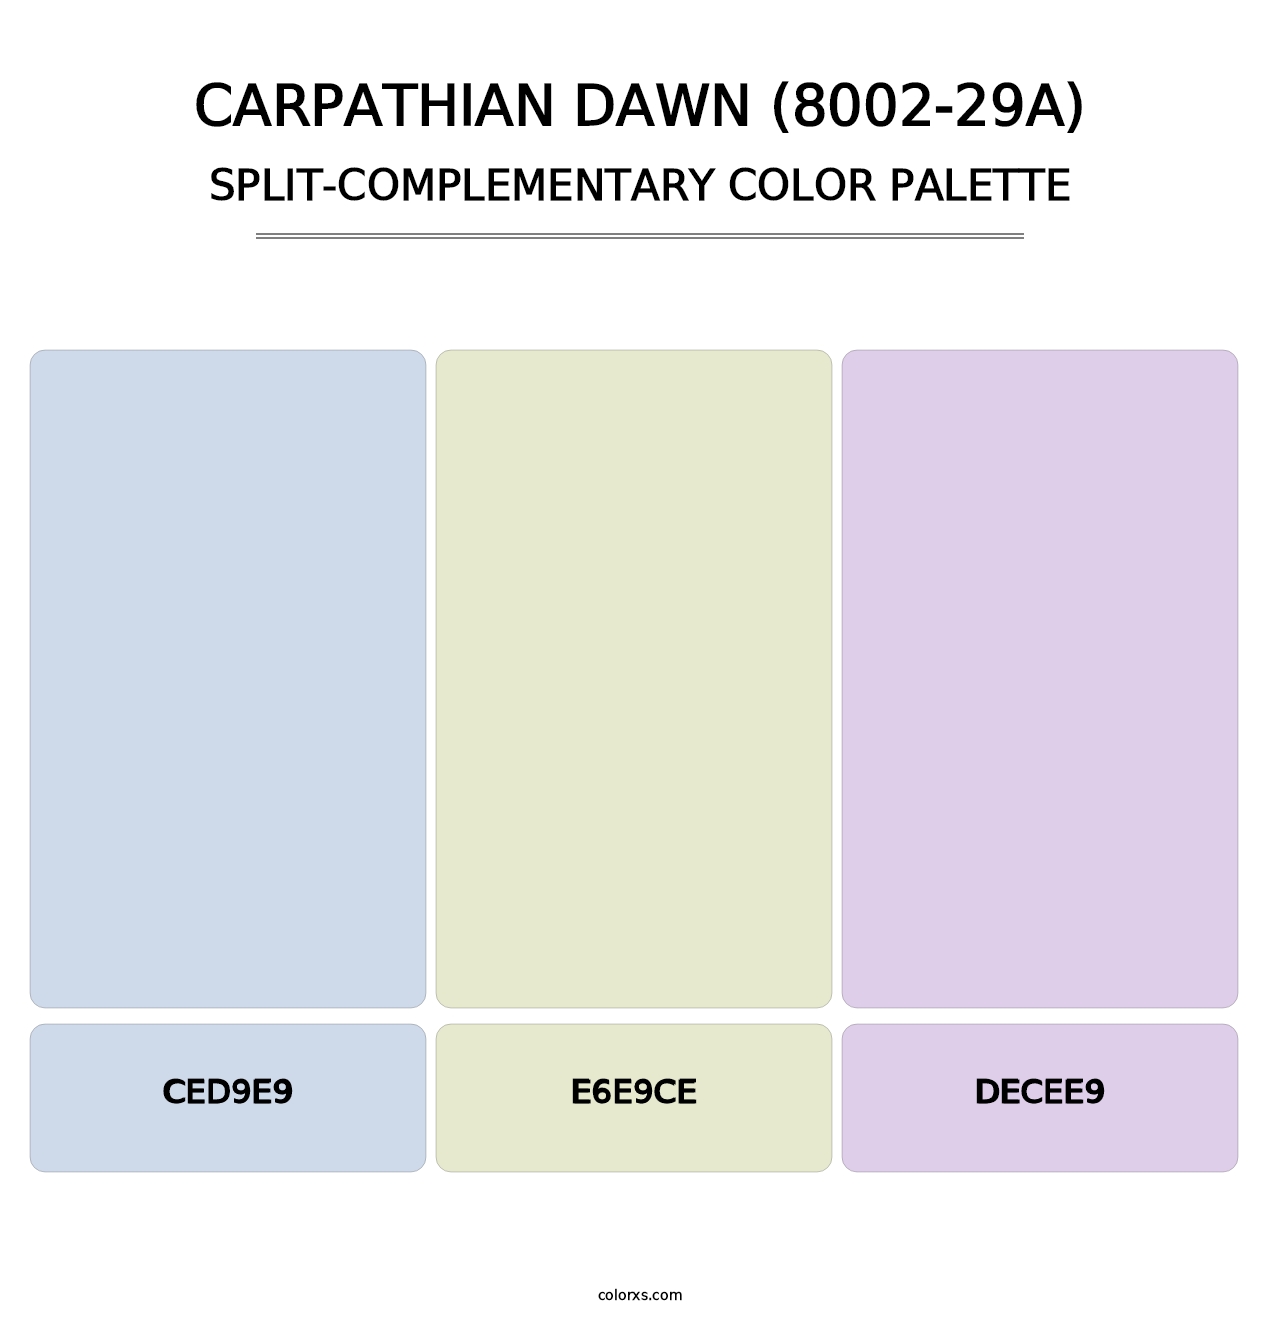 Carpathian Dawn (8002-29A) - Split-Complementary Color Palette